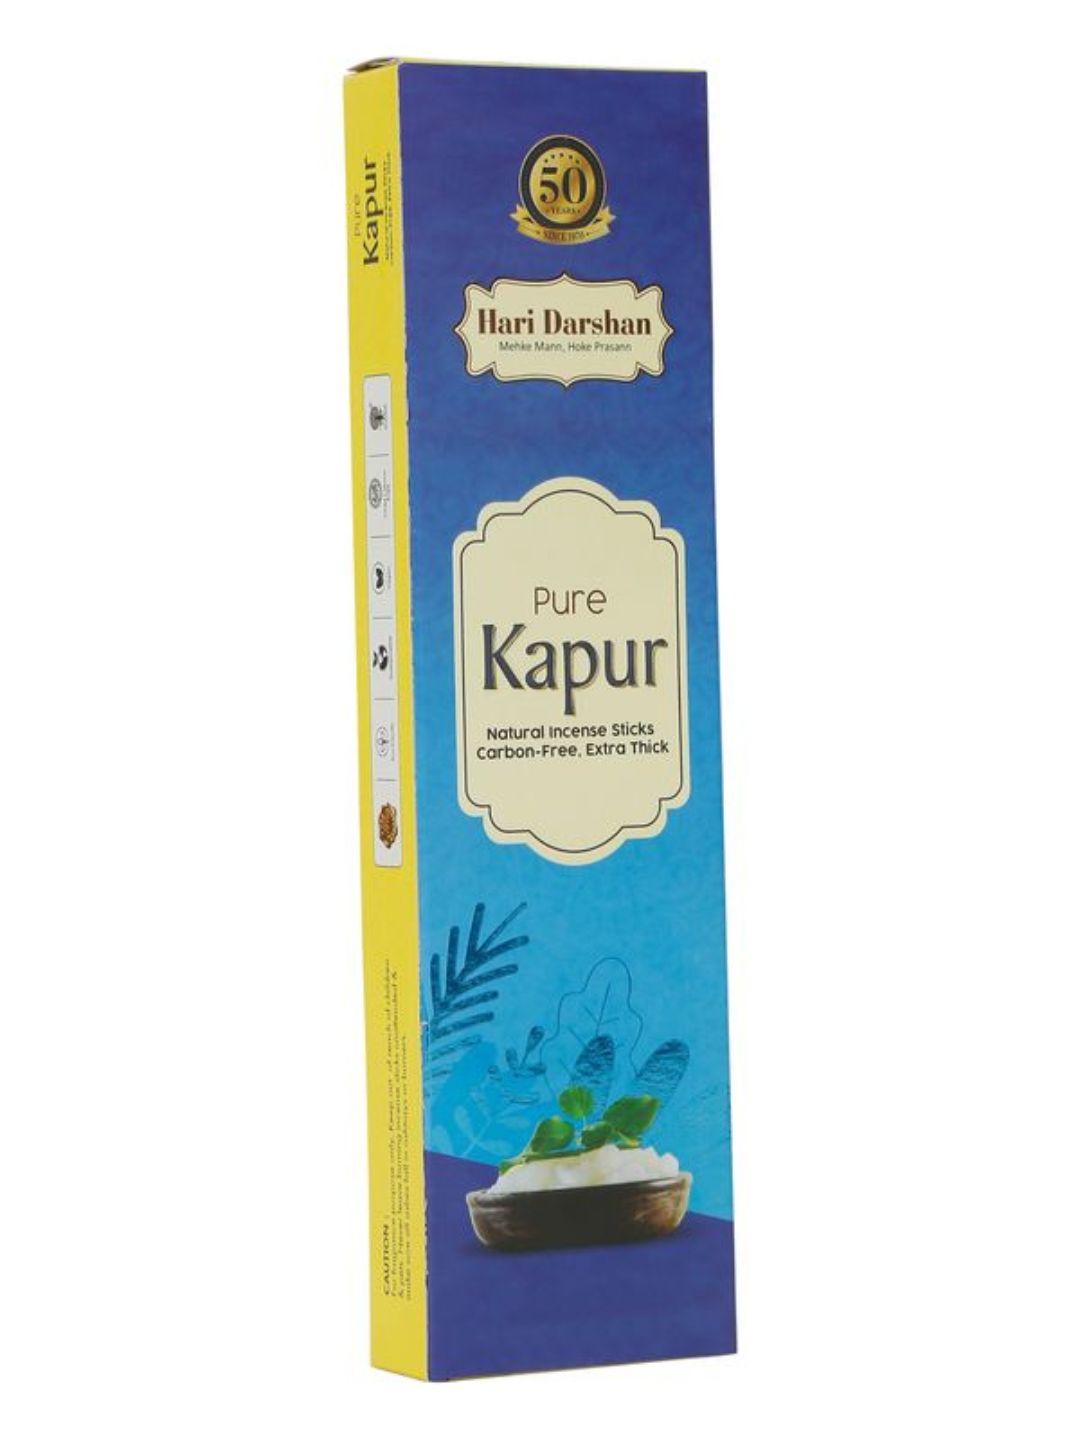 Hari Darshan Pure Kapur Natural Incense Sticks Carbon Free Agarbatti -60g